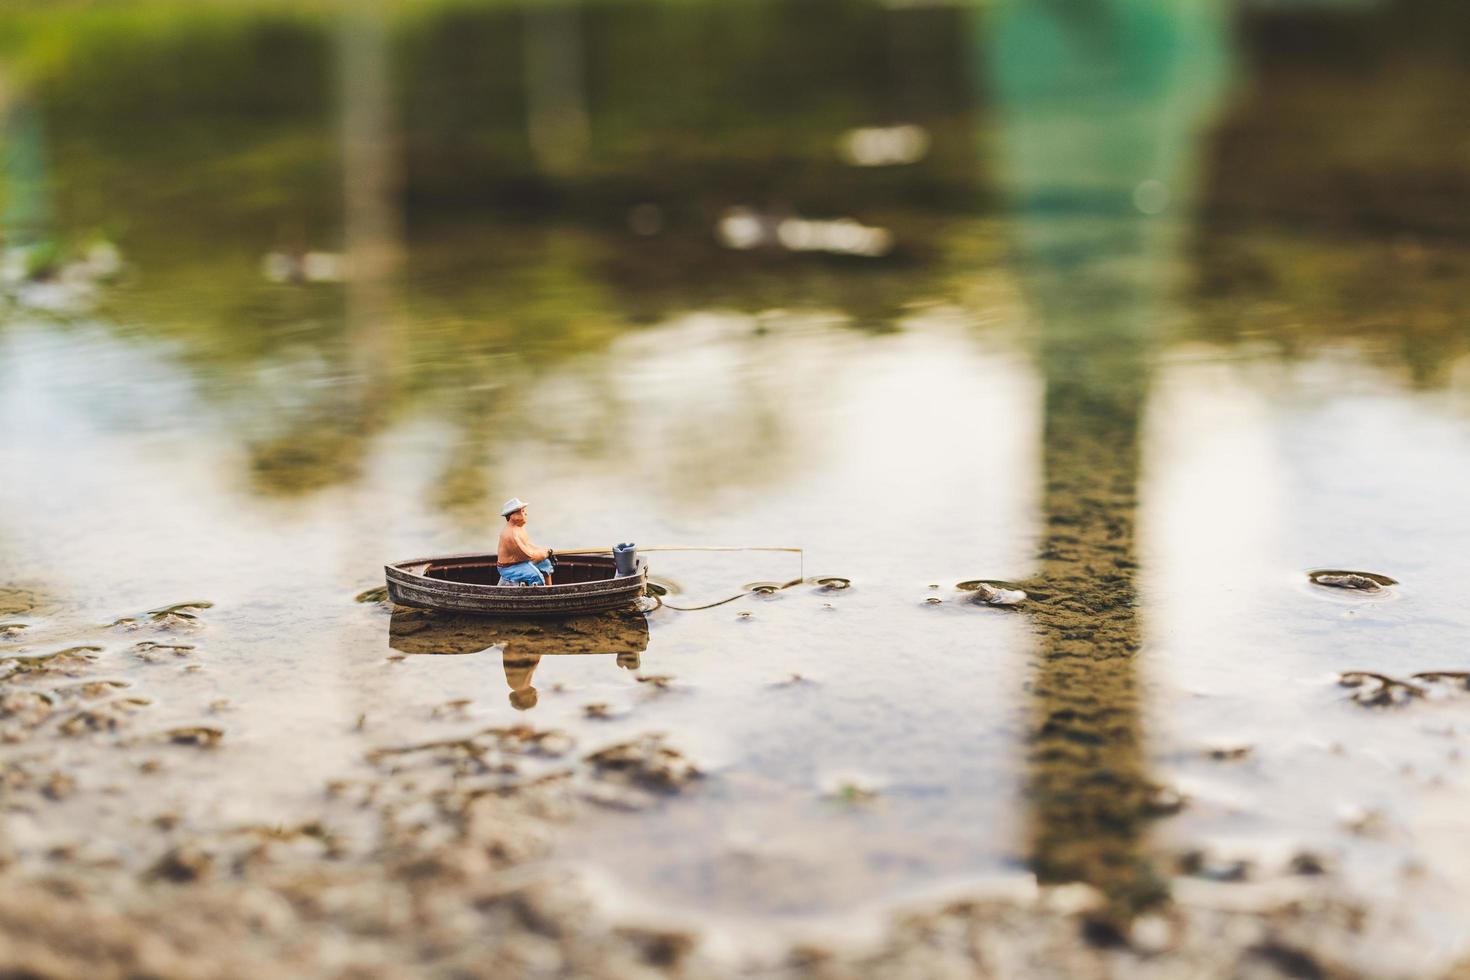 pescador em miniatura pescando em um barco foto